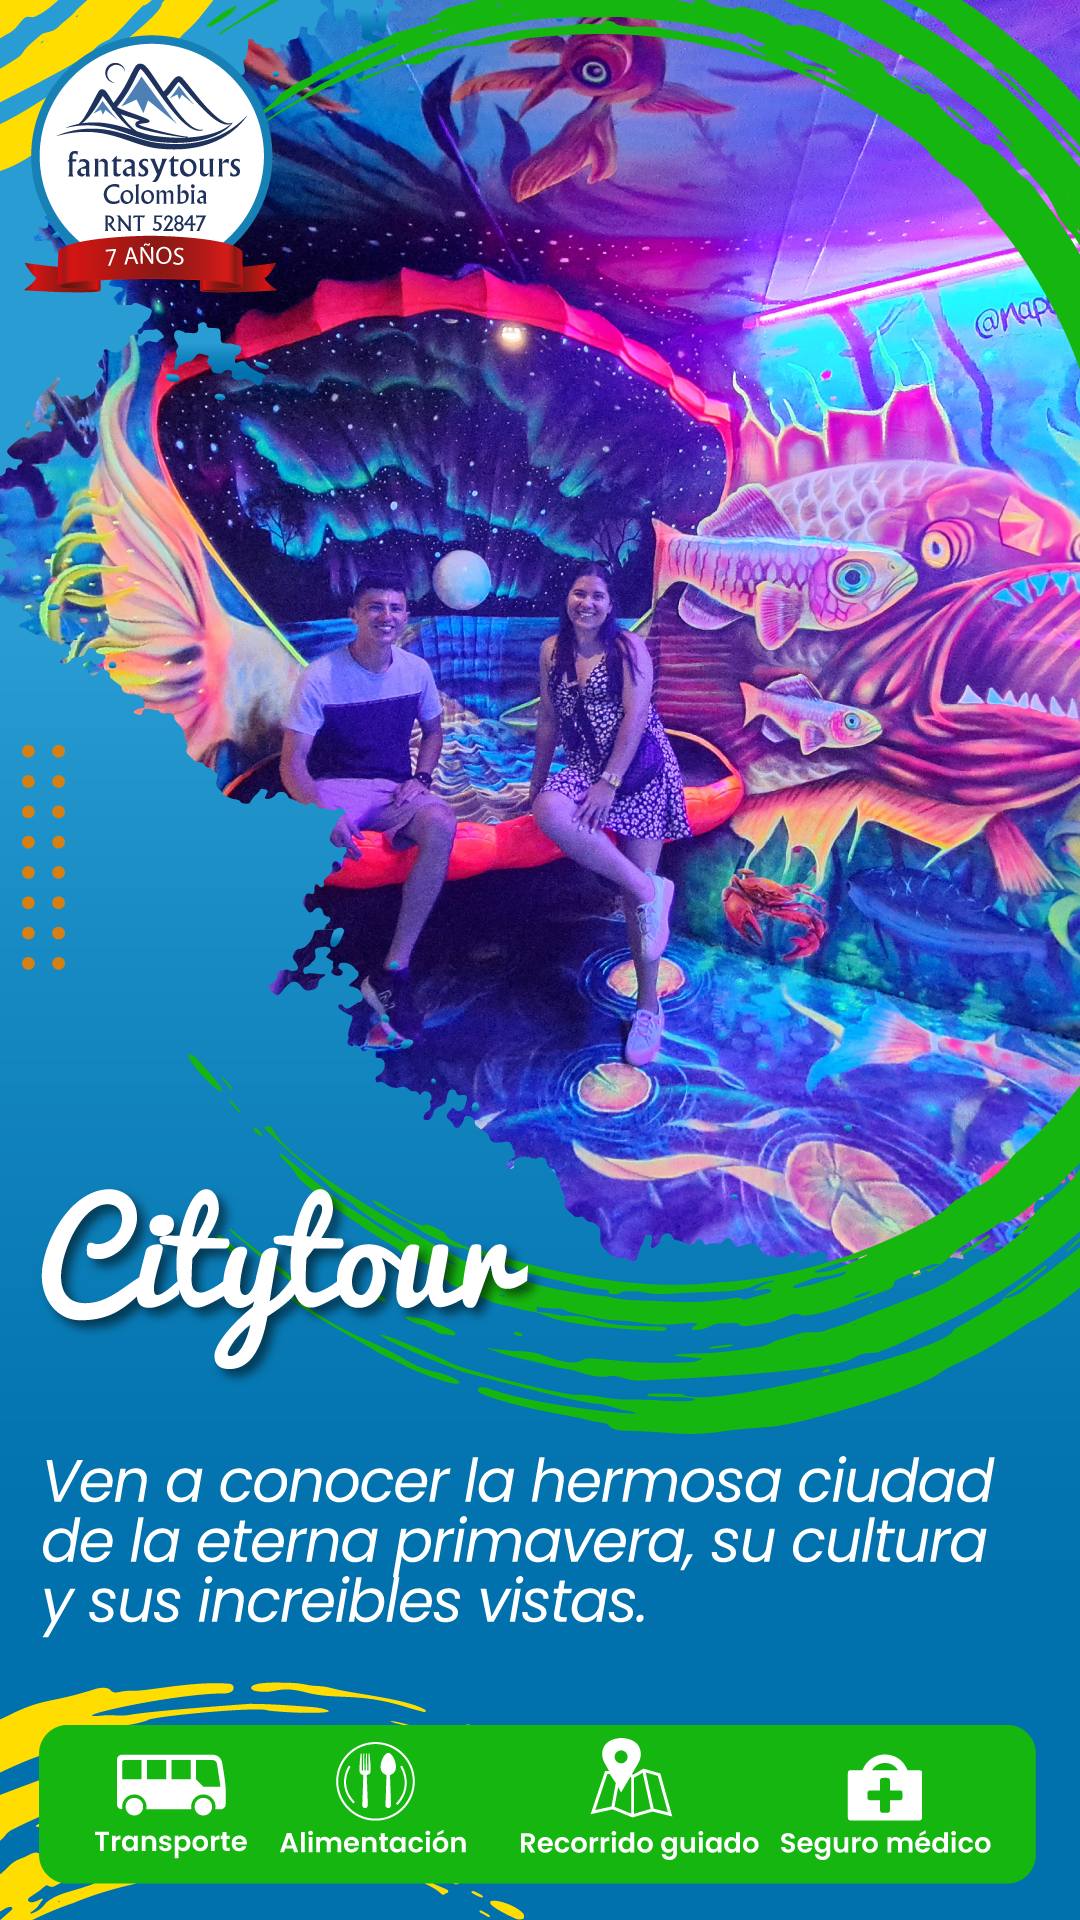 Conoce y haz un citytourTour a la GuajiranbspAgencia de Viajes fantasytours Planes turísticos en Santa Fe de Antioquia Medellín Guatapé y Nápoles